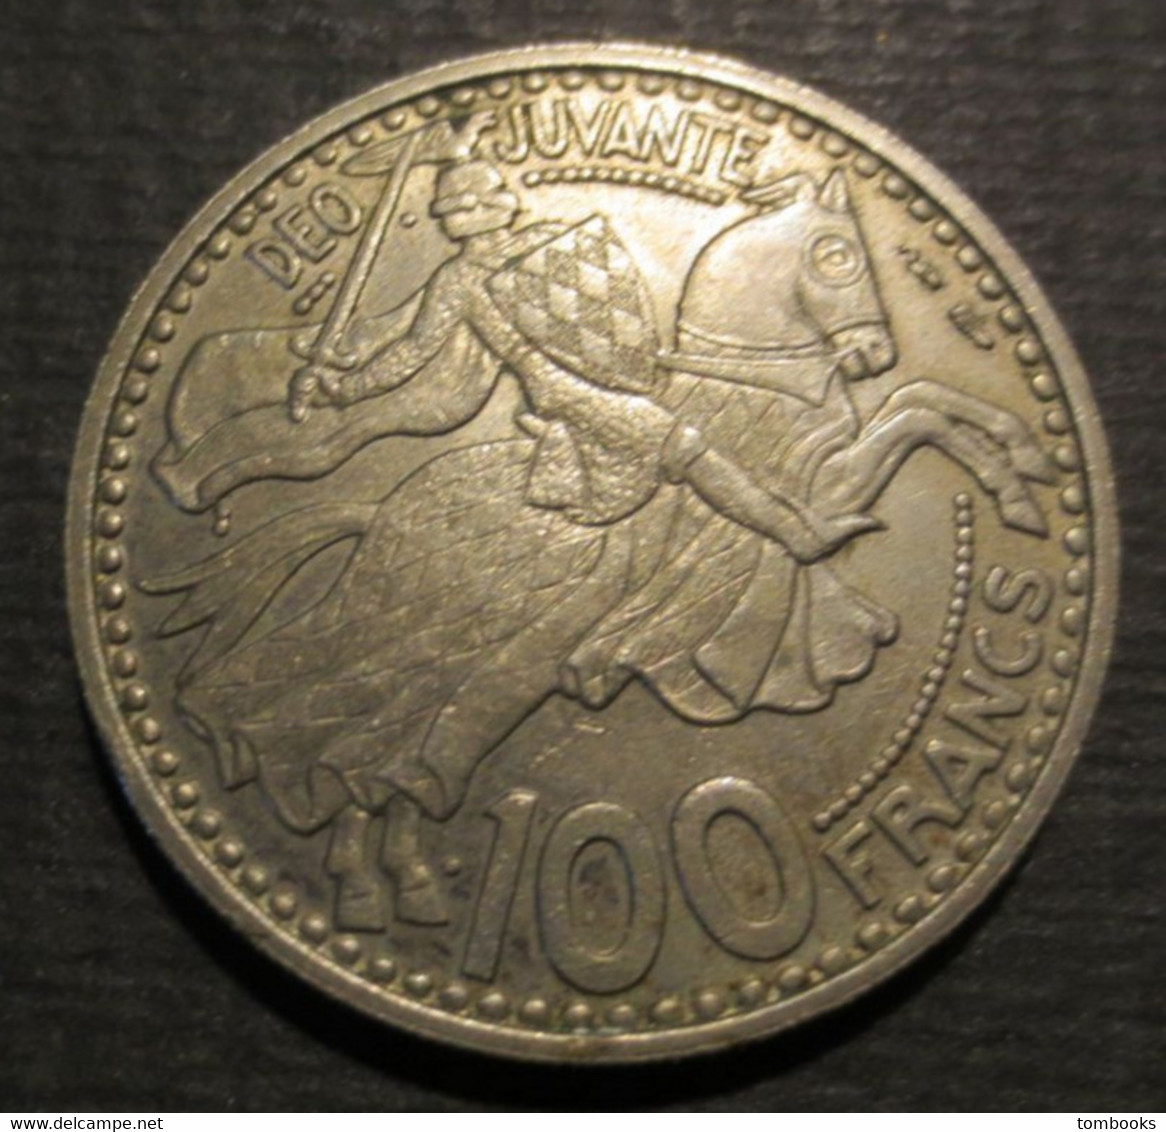 Monaco - Monnaie Ancienne - 100 Francs - Copper Nickel - Rainier III - Prince De Monaco - 1950 - - 1949-1956 Anciens Francs